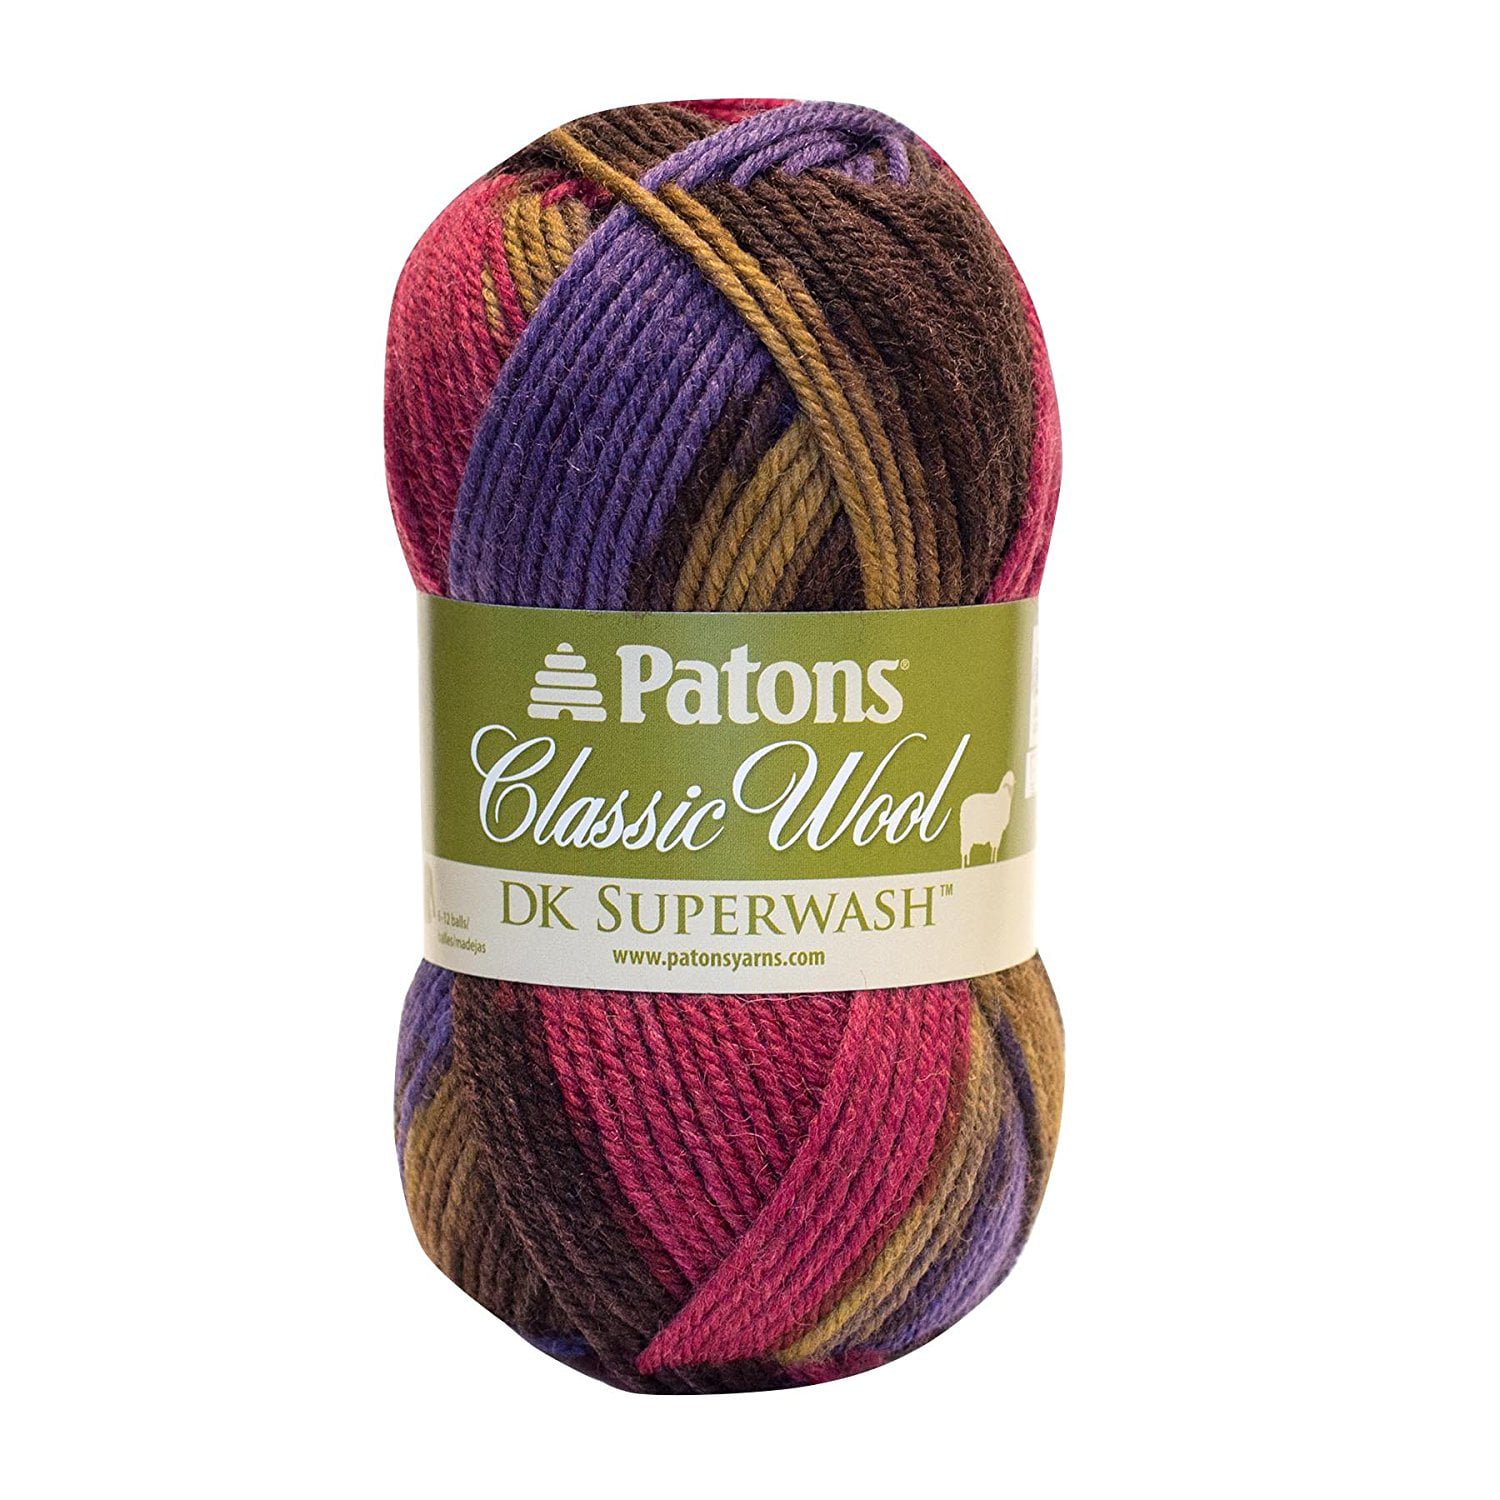 Classic Wool DK Yarn, Autumn Spice, This yarn's breathtaking shade